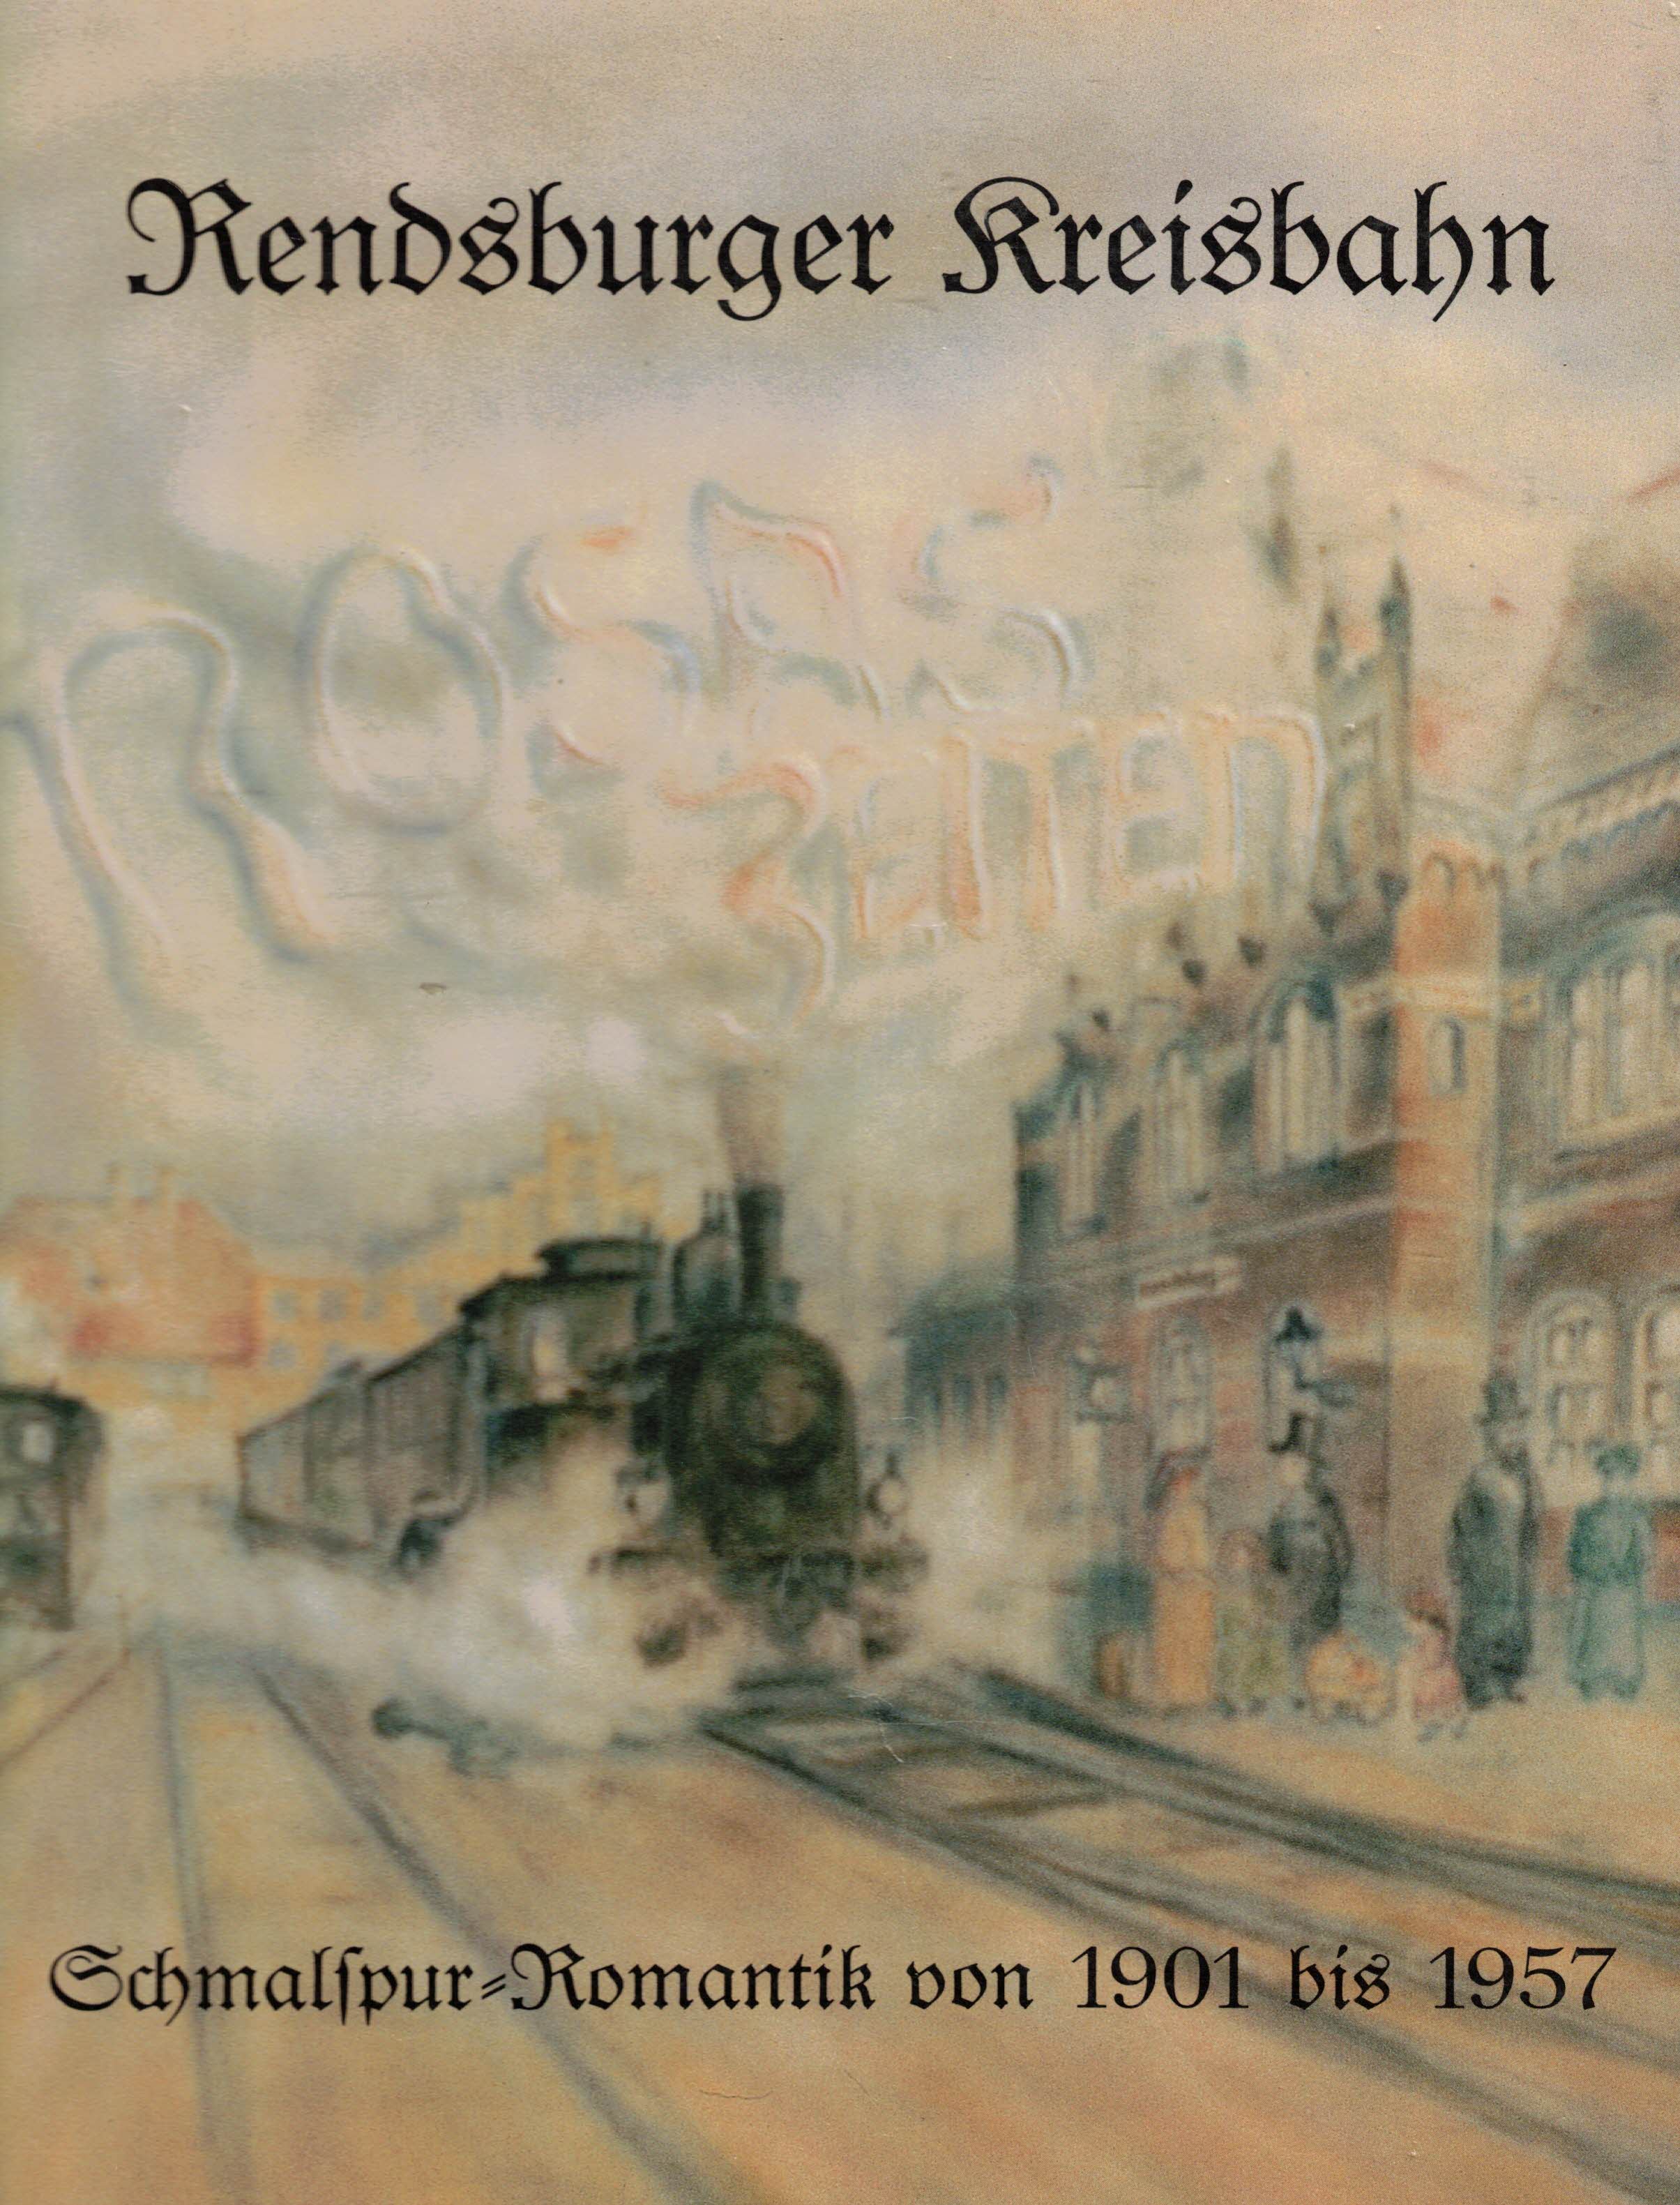 Rosas Zeiten. Rendsburger Kreisbahn: Schmalspur-Romantik von 1901 bis 1957 - Kerber, Andreas